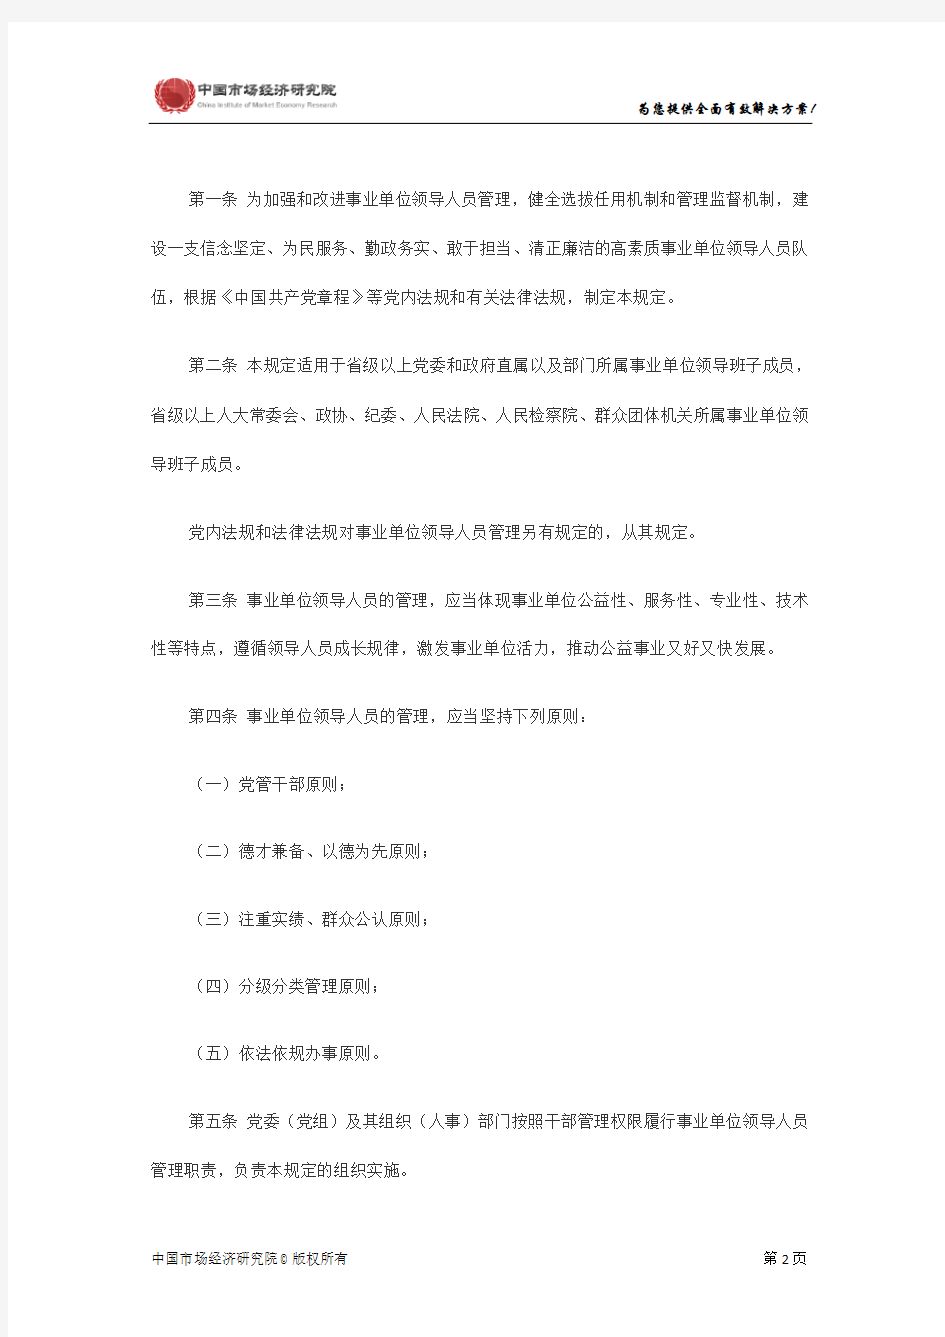 中共中央办公厅印发《事业单位领导人员管理暂行规定》